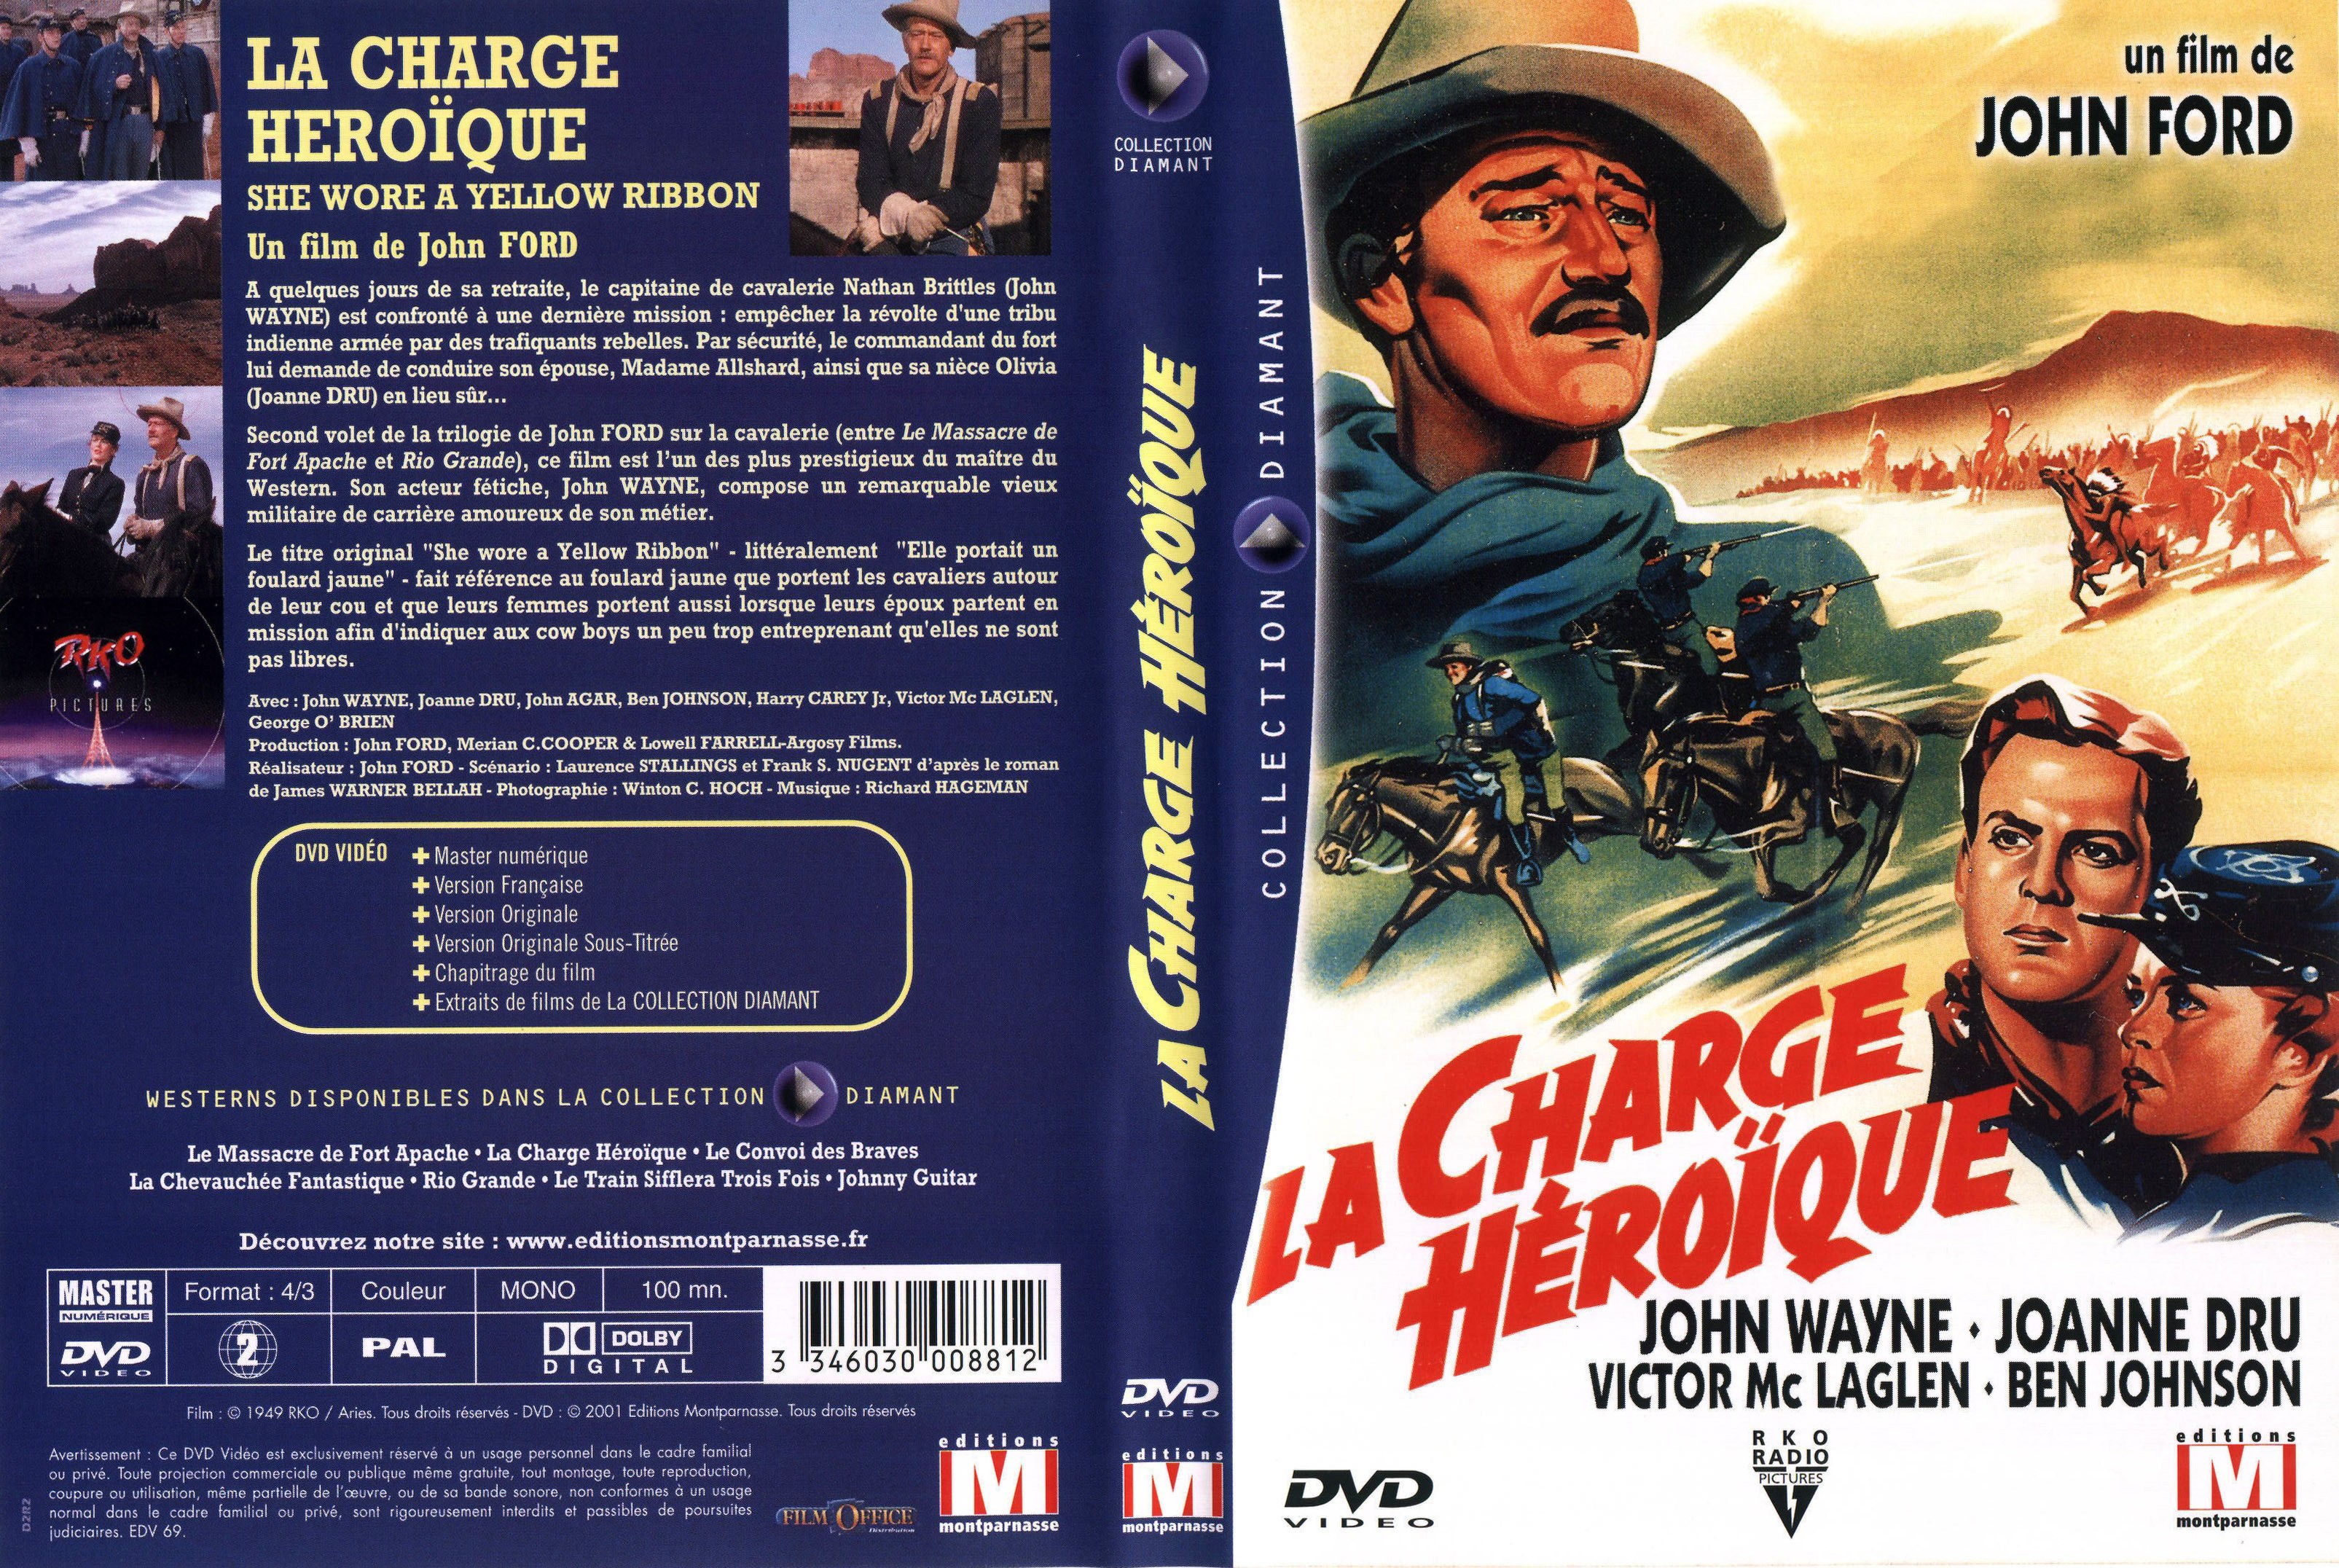 Jaquette DVD La charge heroique